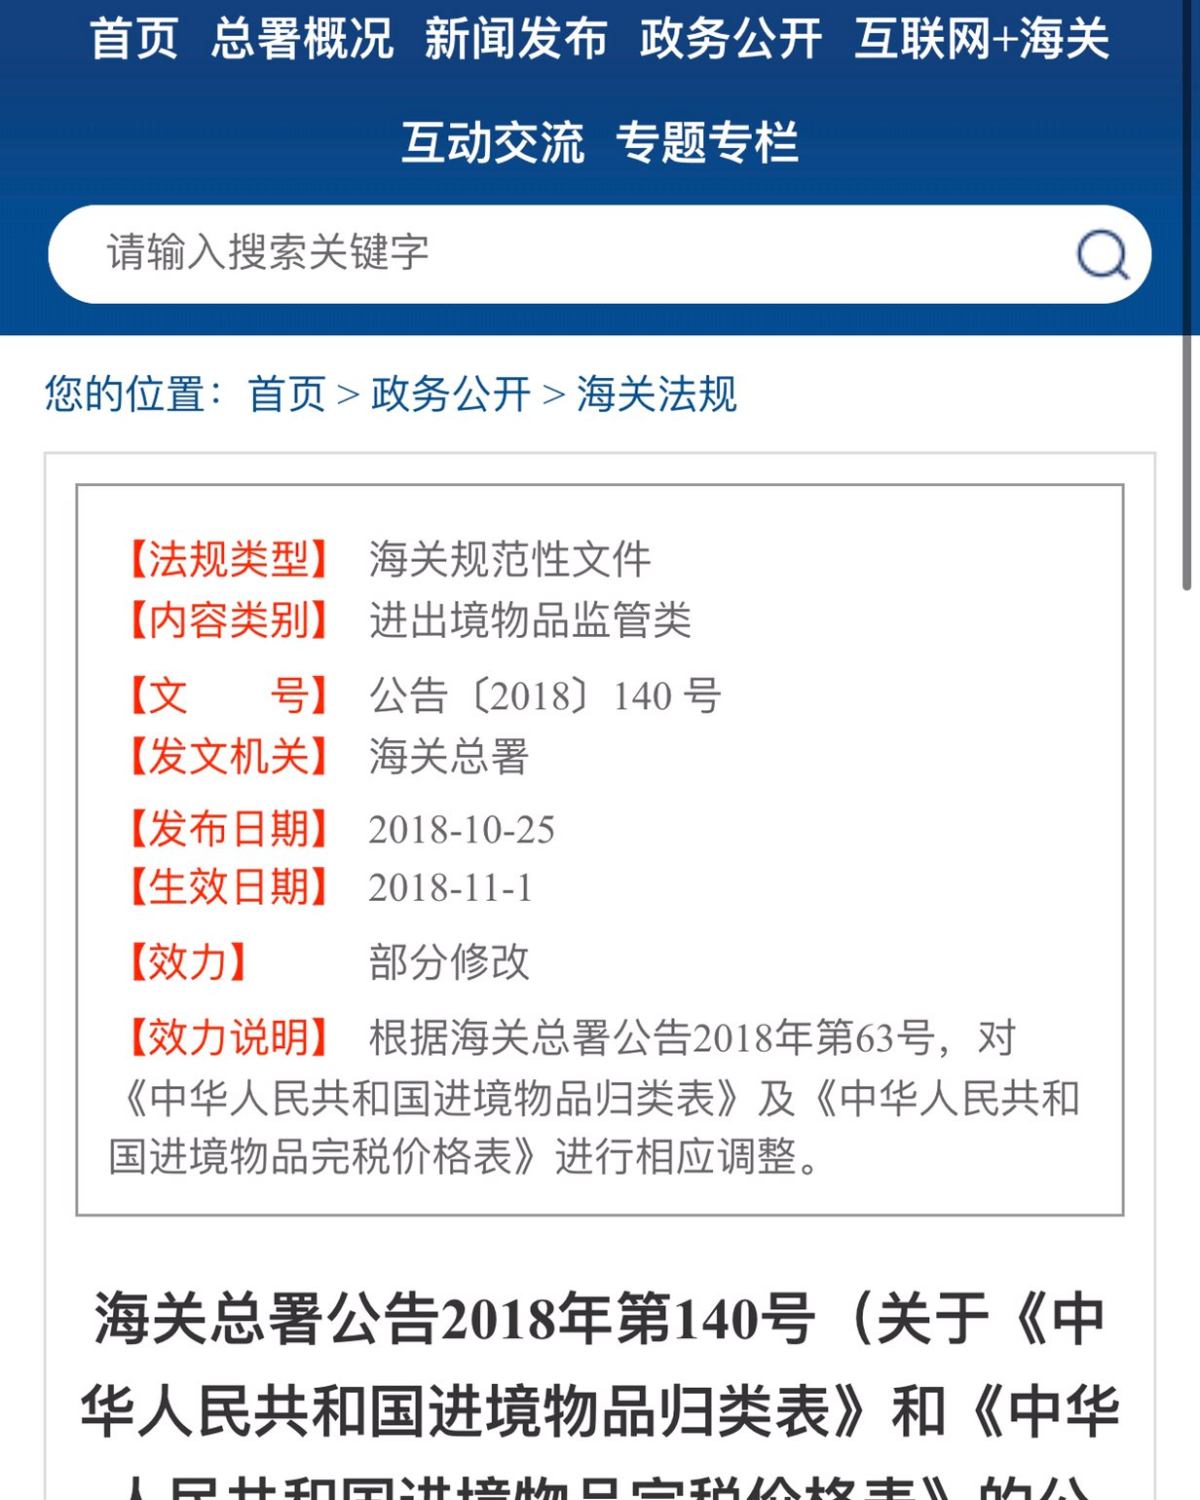 直邮缴税常规操作之外的经验分享（上）   #我的中国银行Vi